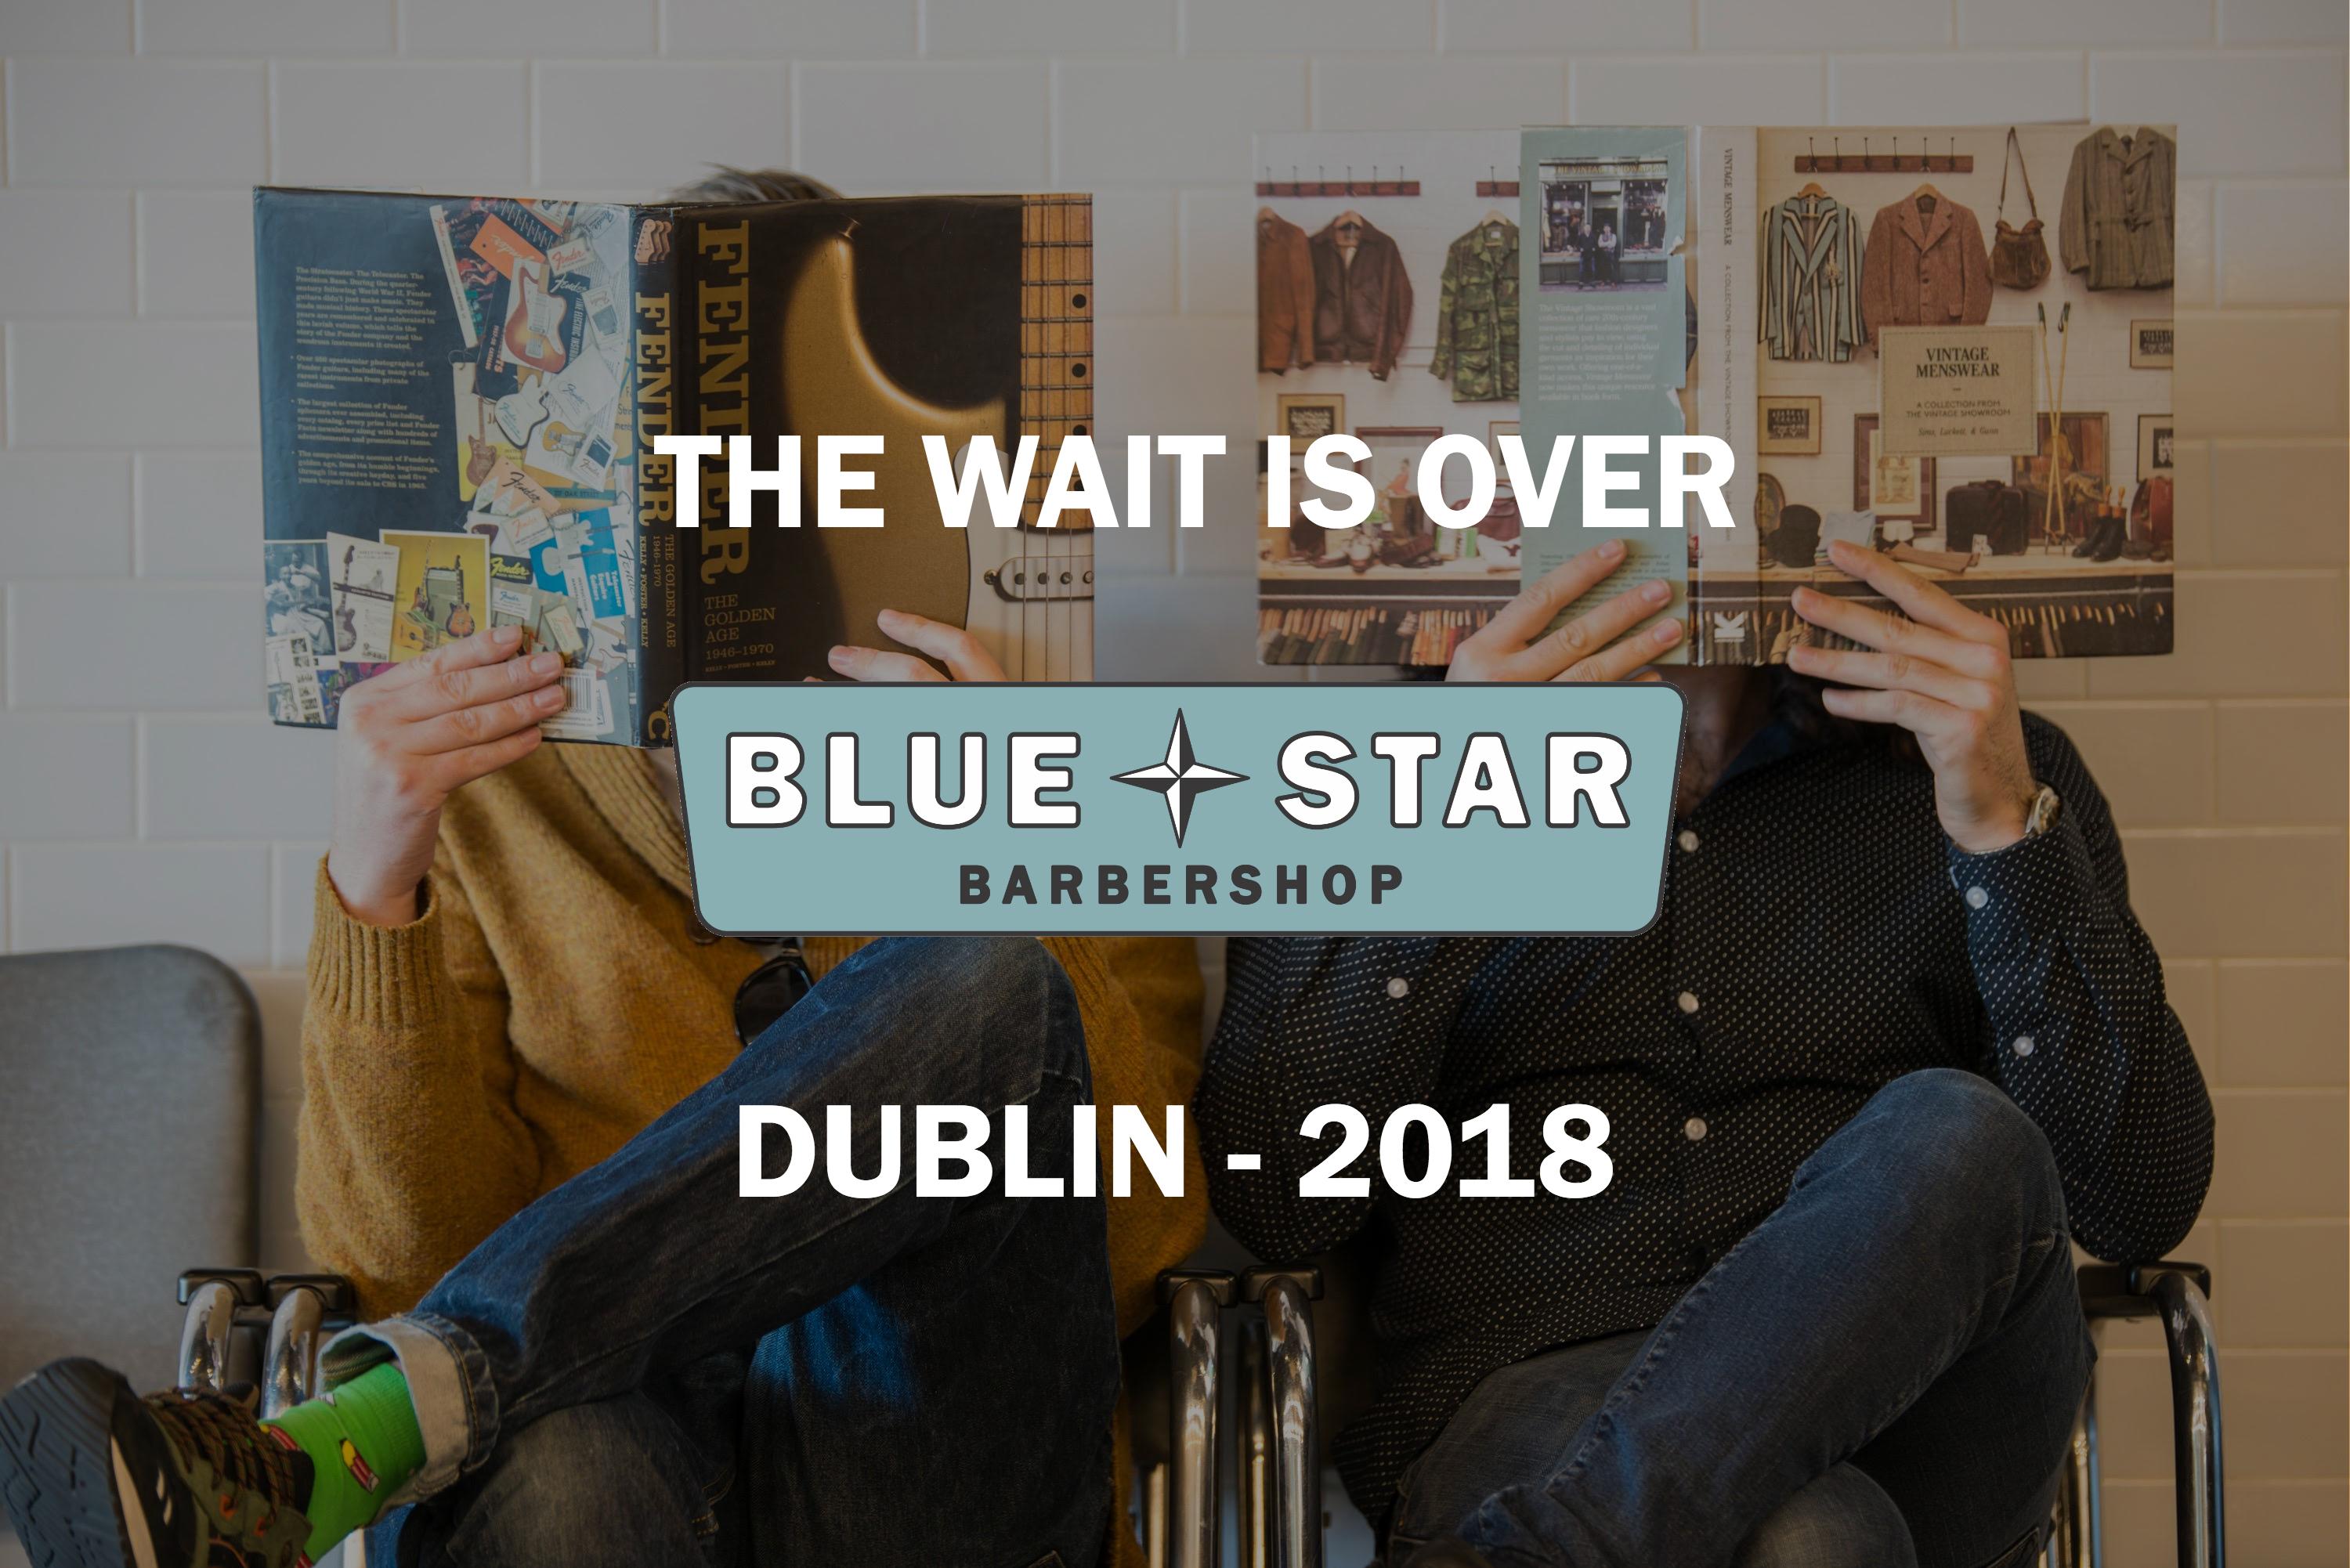 Dublin - New Barber Shop Announcement 